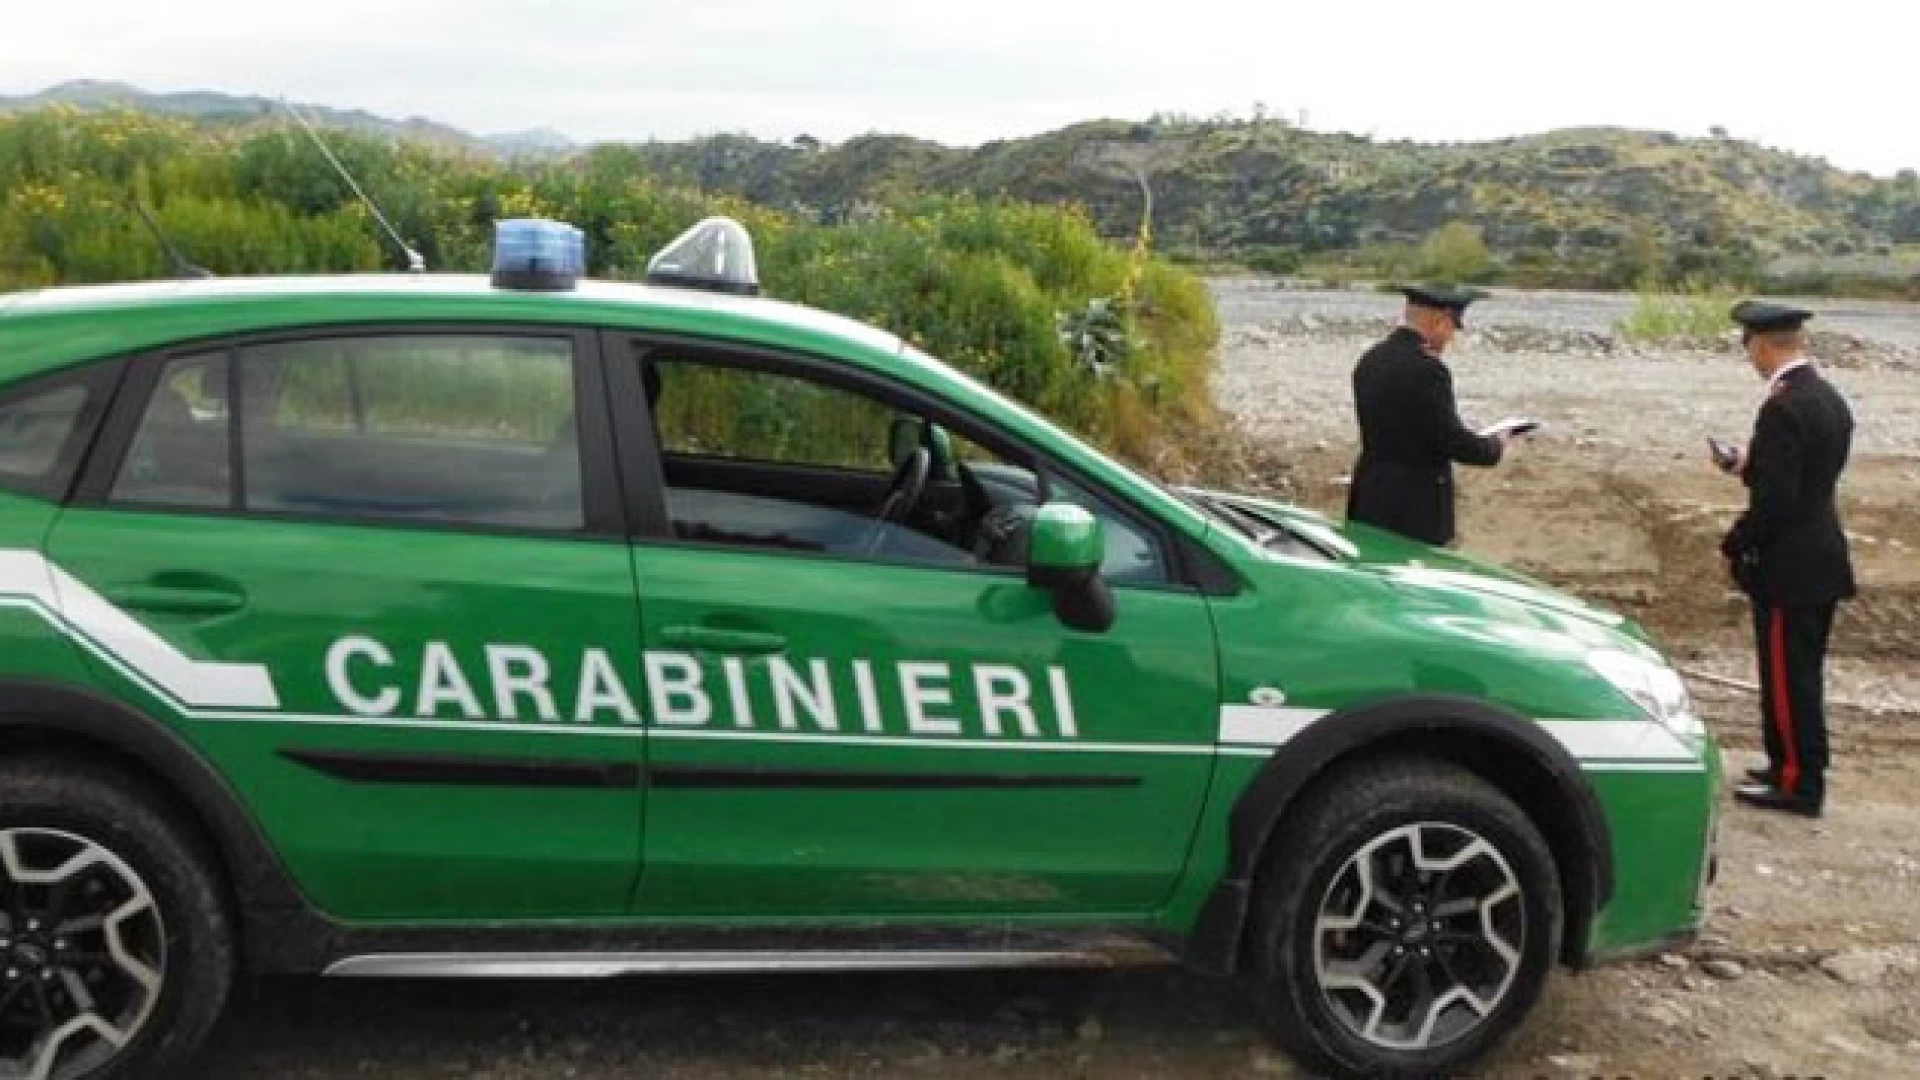 Isernia: 	Carabinieri in azione a tutela dei lavoratori e dell’ambiente, scattano denunce e sequestri.